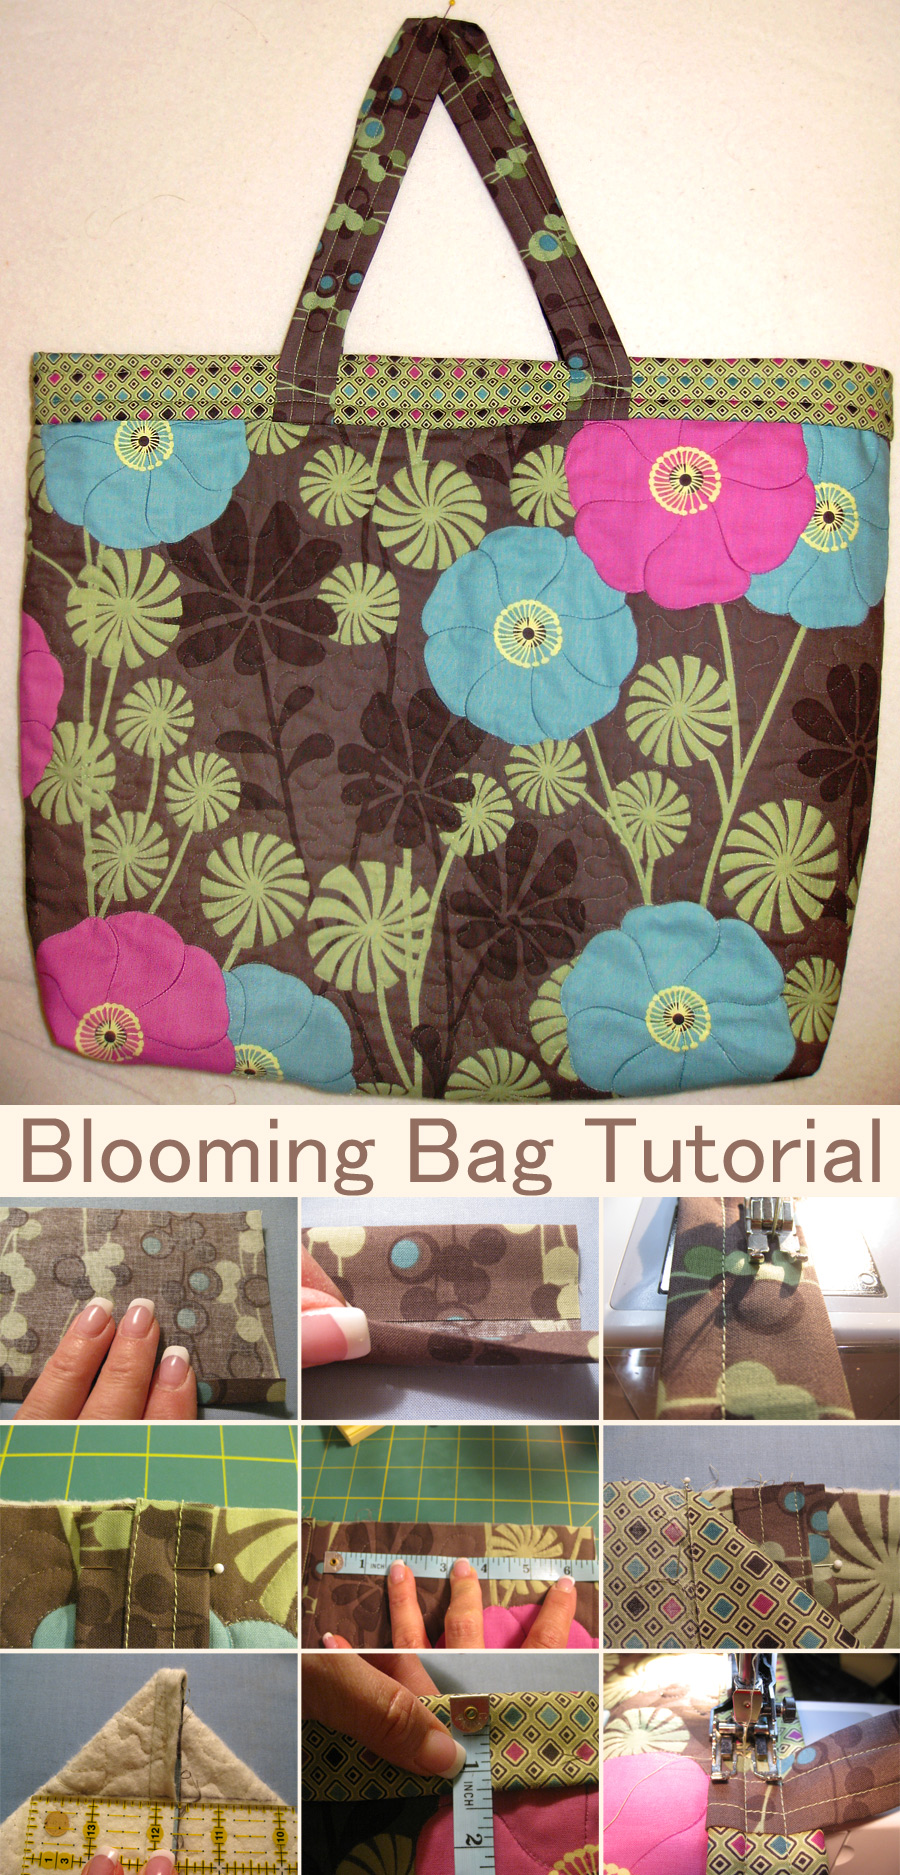 Blooming Bag Tutorial